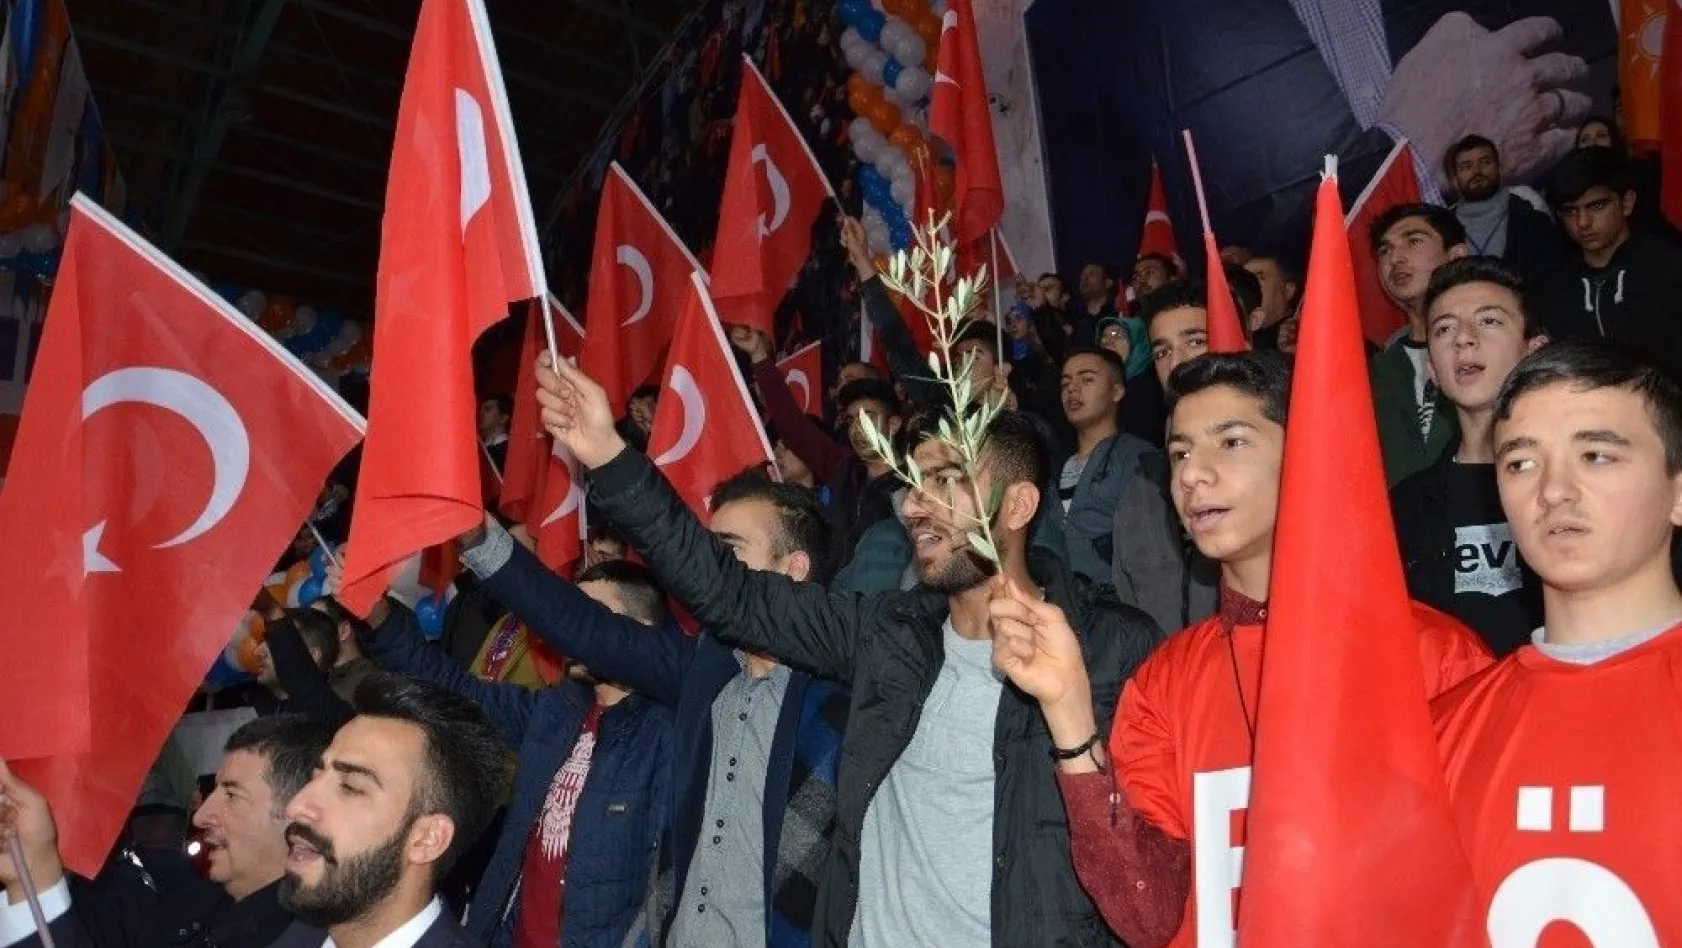 Başbakan Yıldırım'dan Cumhur İttifakı'na ahlaksız teklif diyen CHP'ye sert cevap
